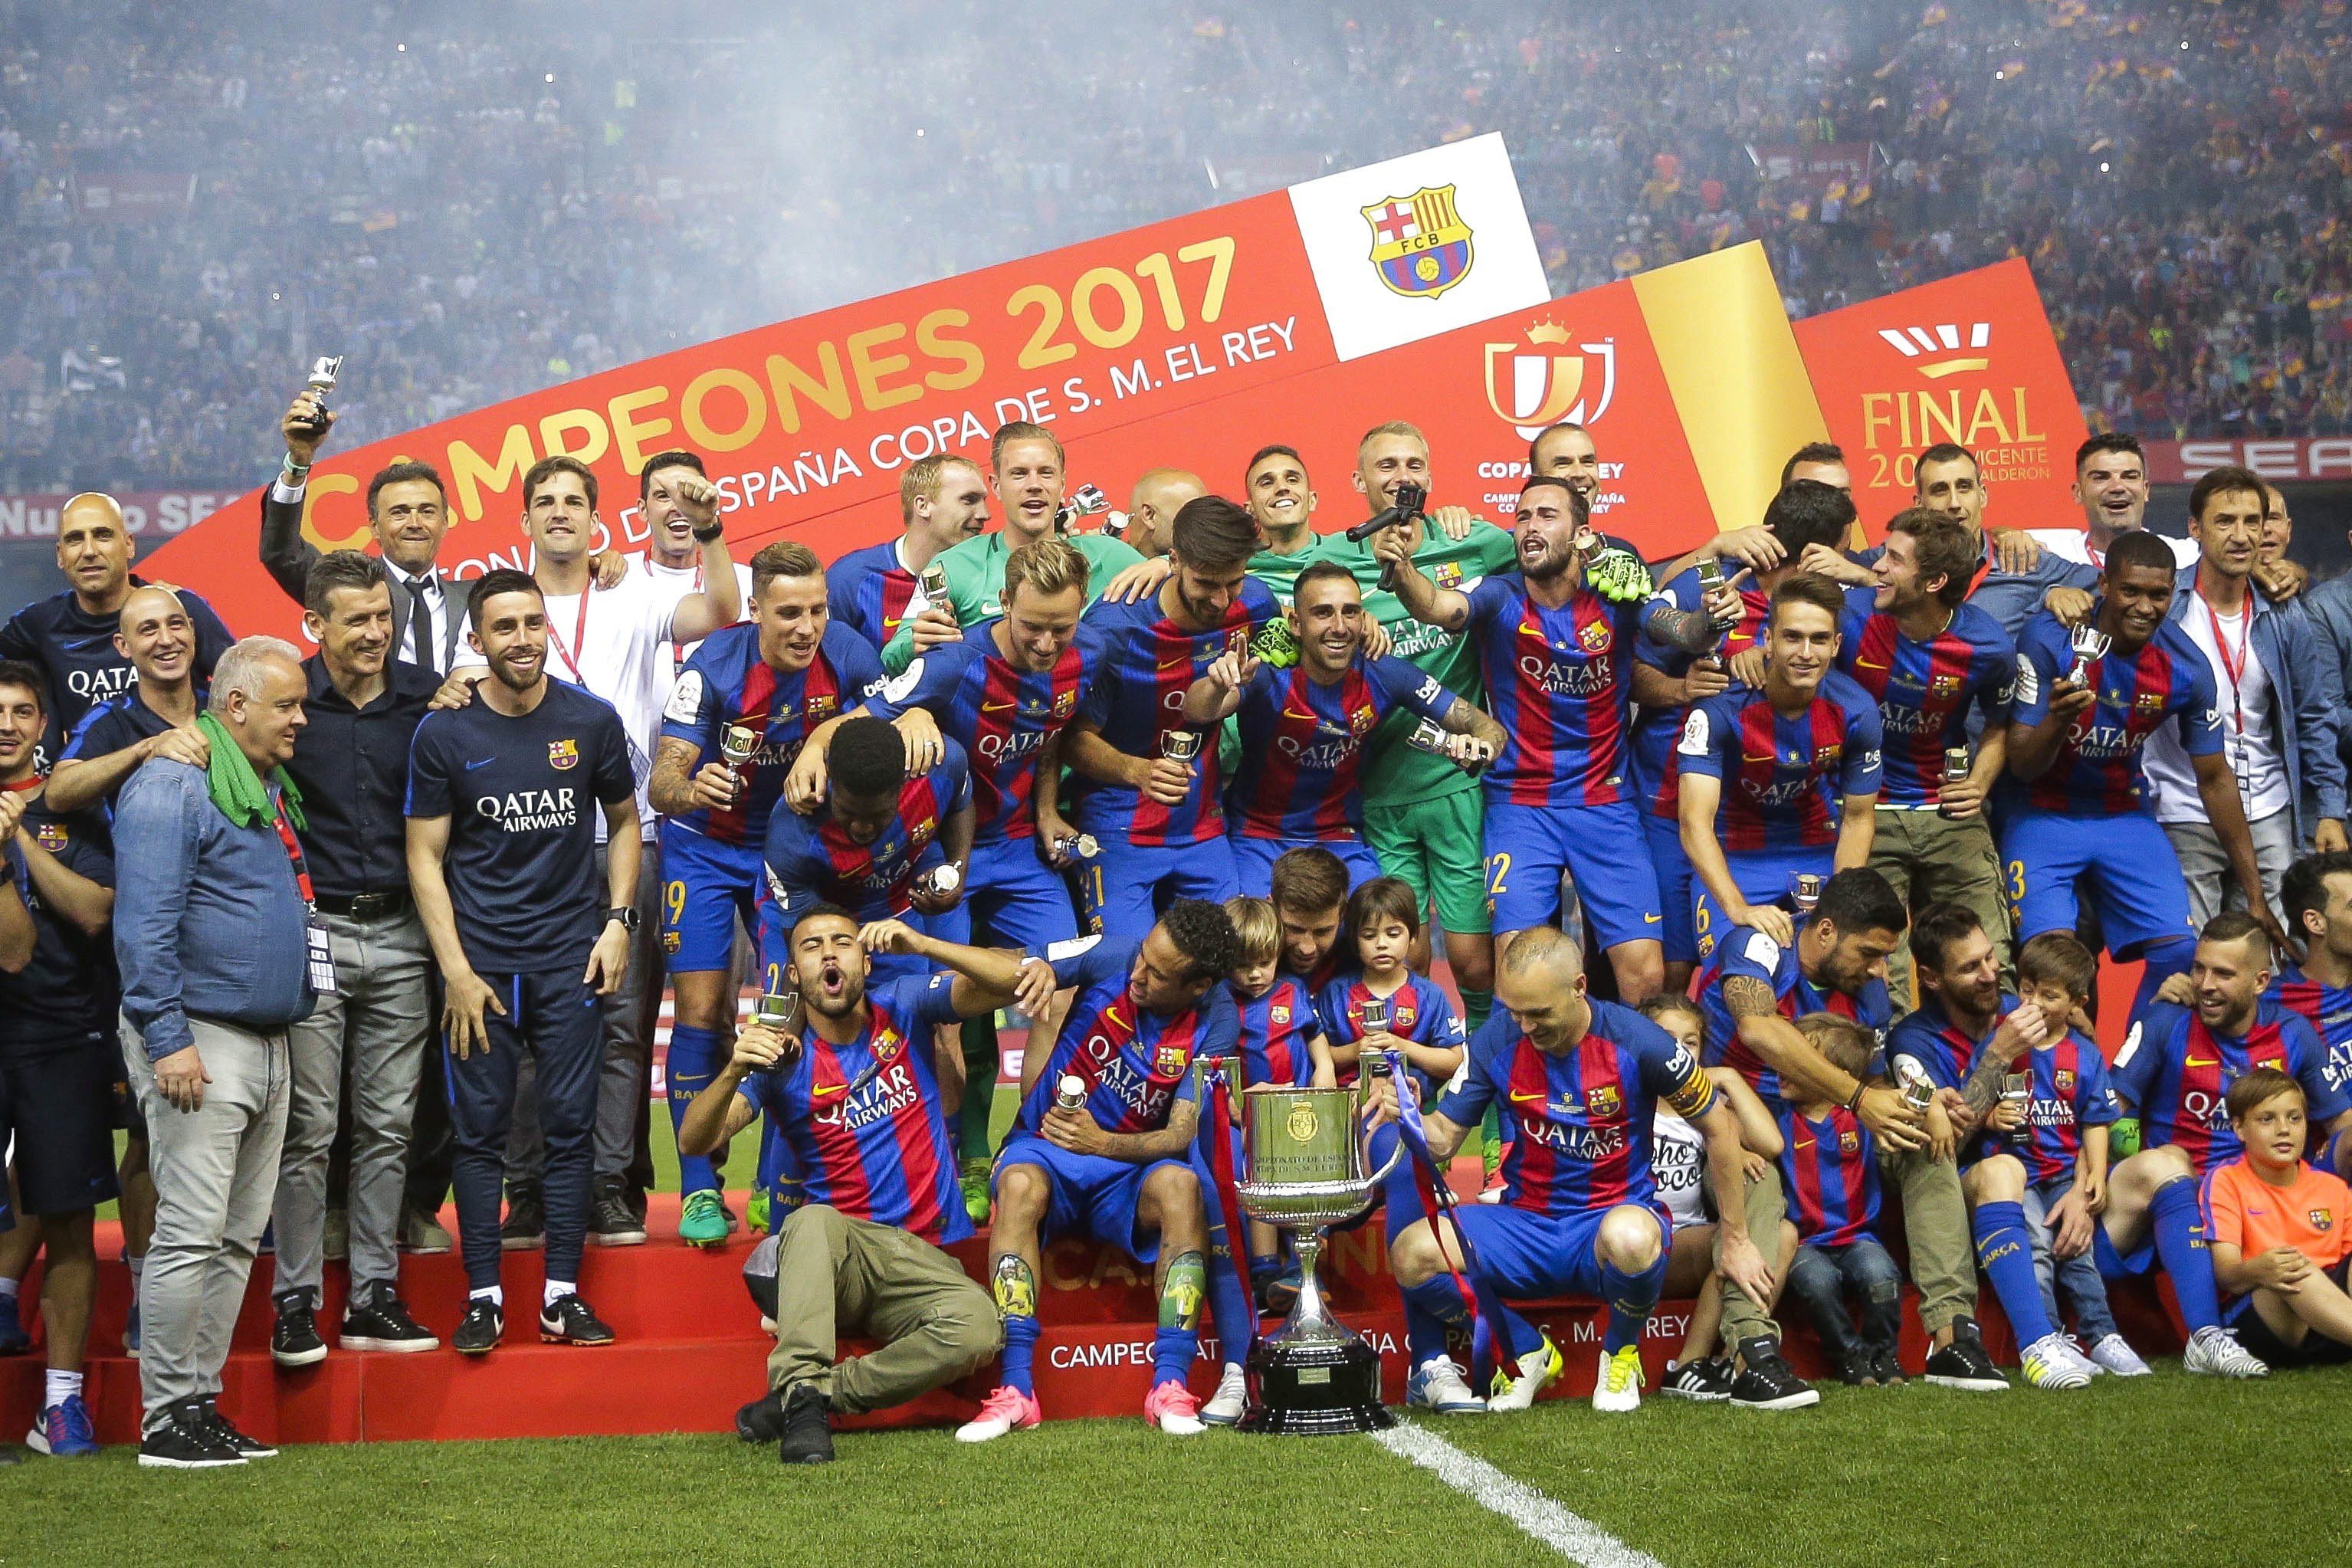 La final de Copa desencanta al aficionado del Barça